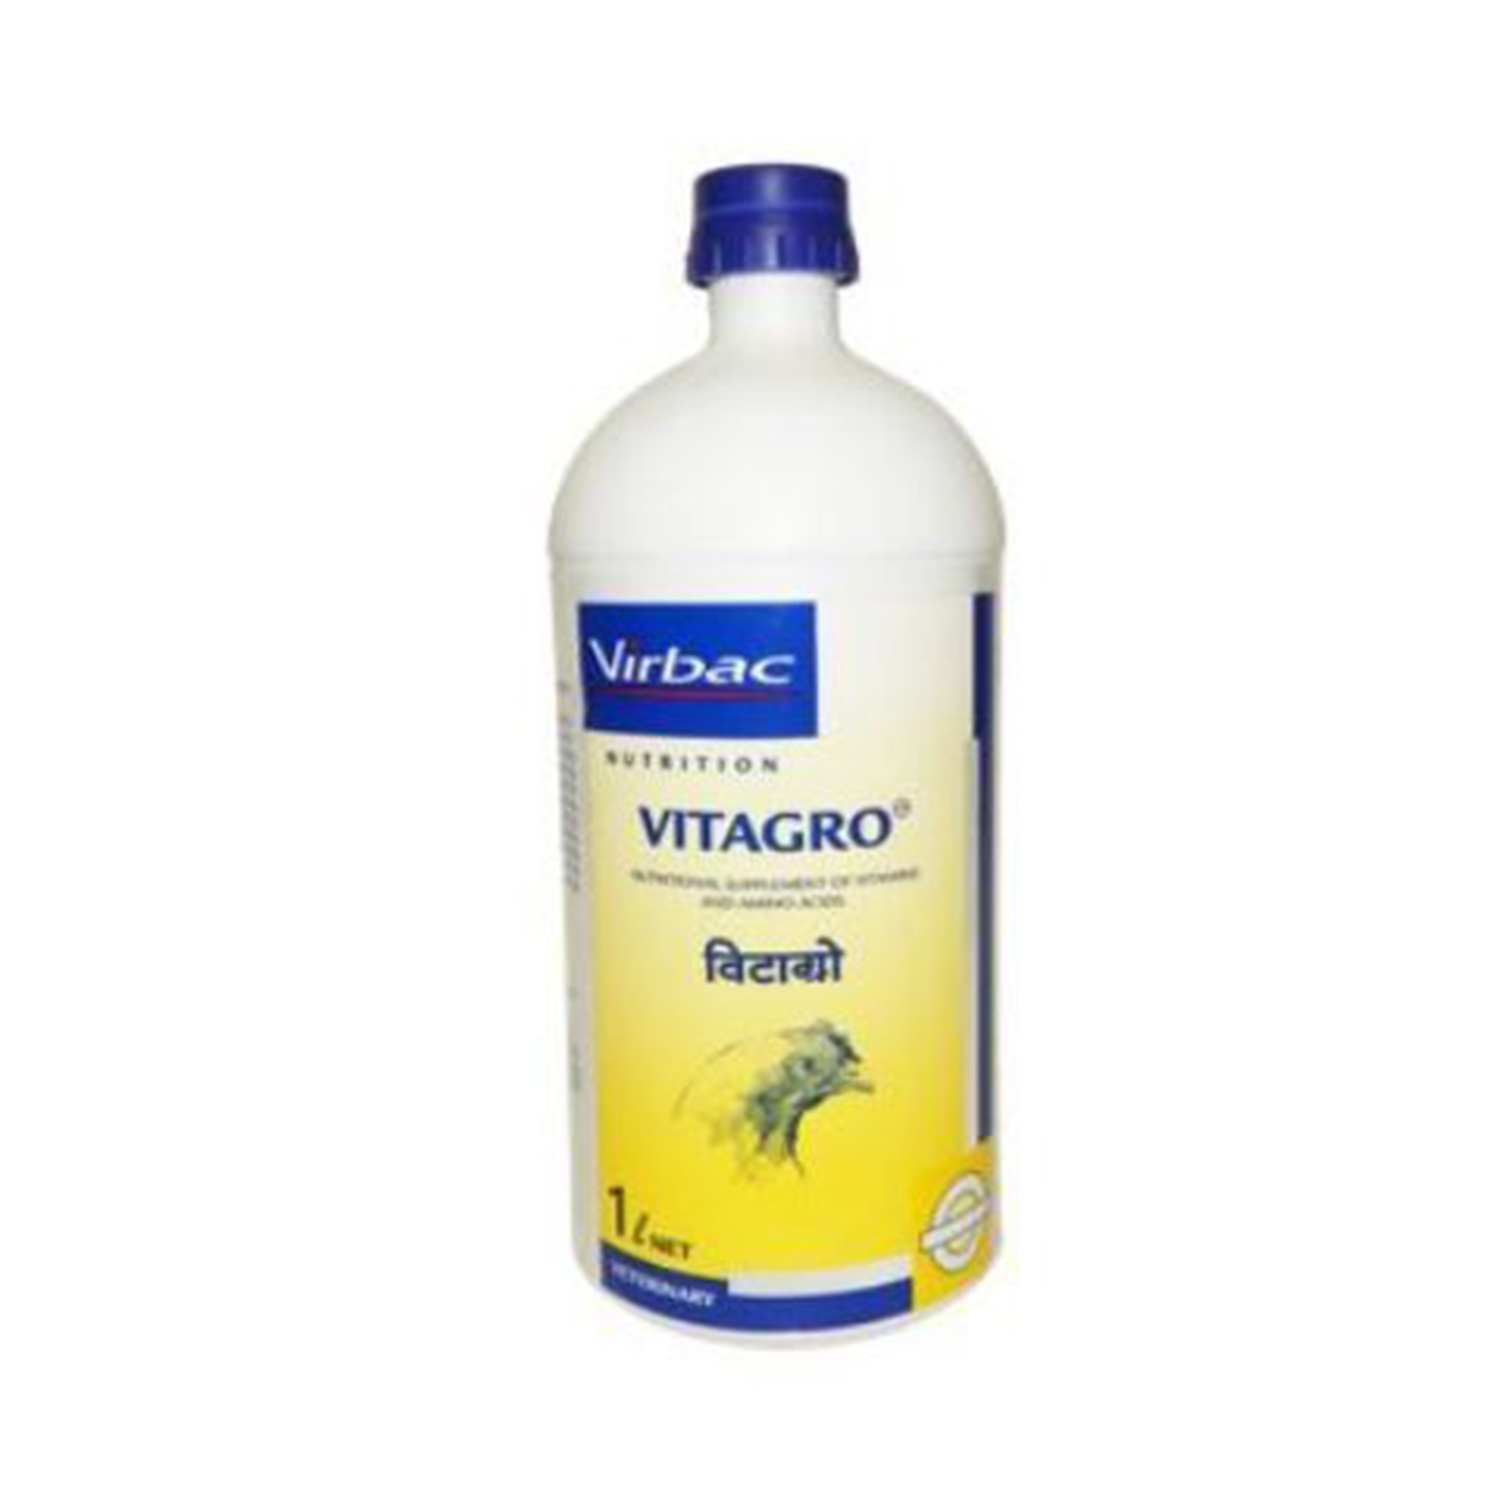 Buy Virbac Vitagro 1 L Online at Best Price in kerala from 